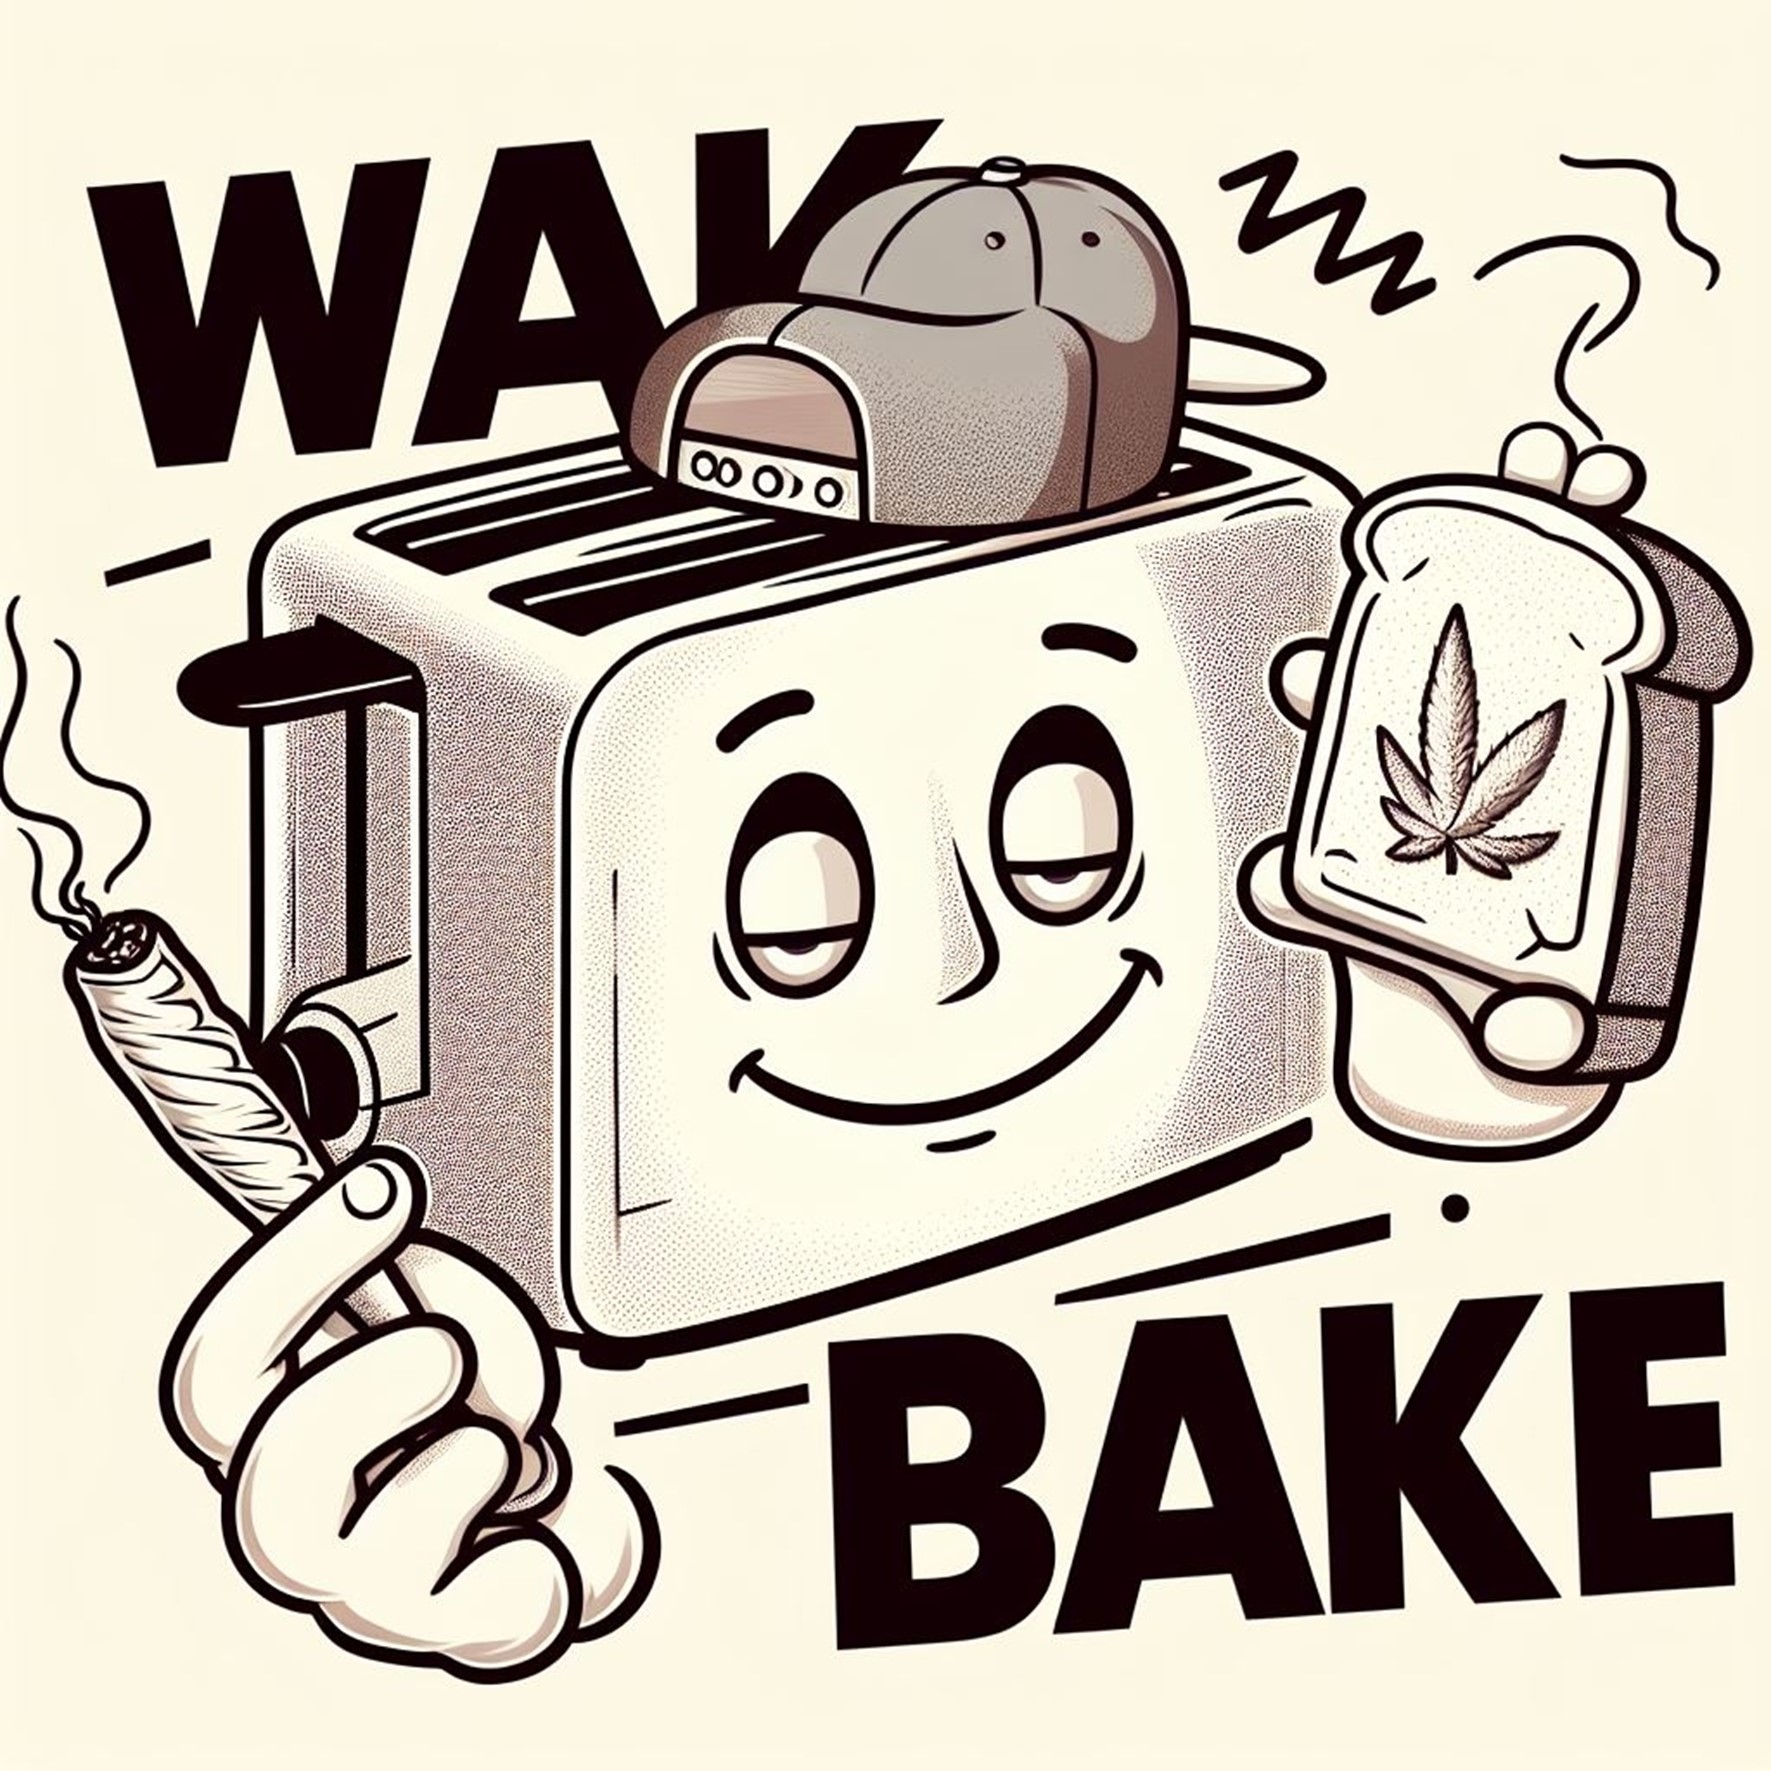 wake and bake